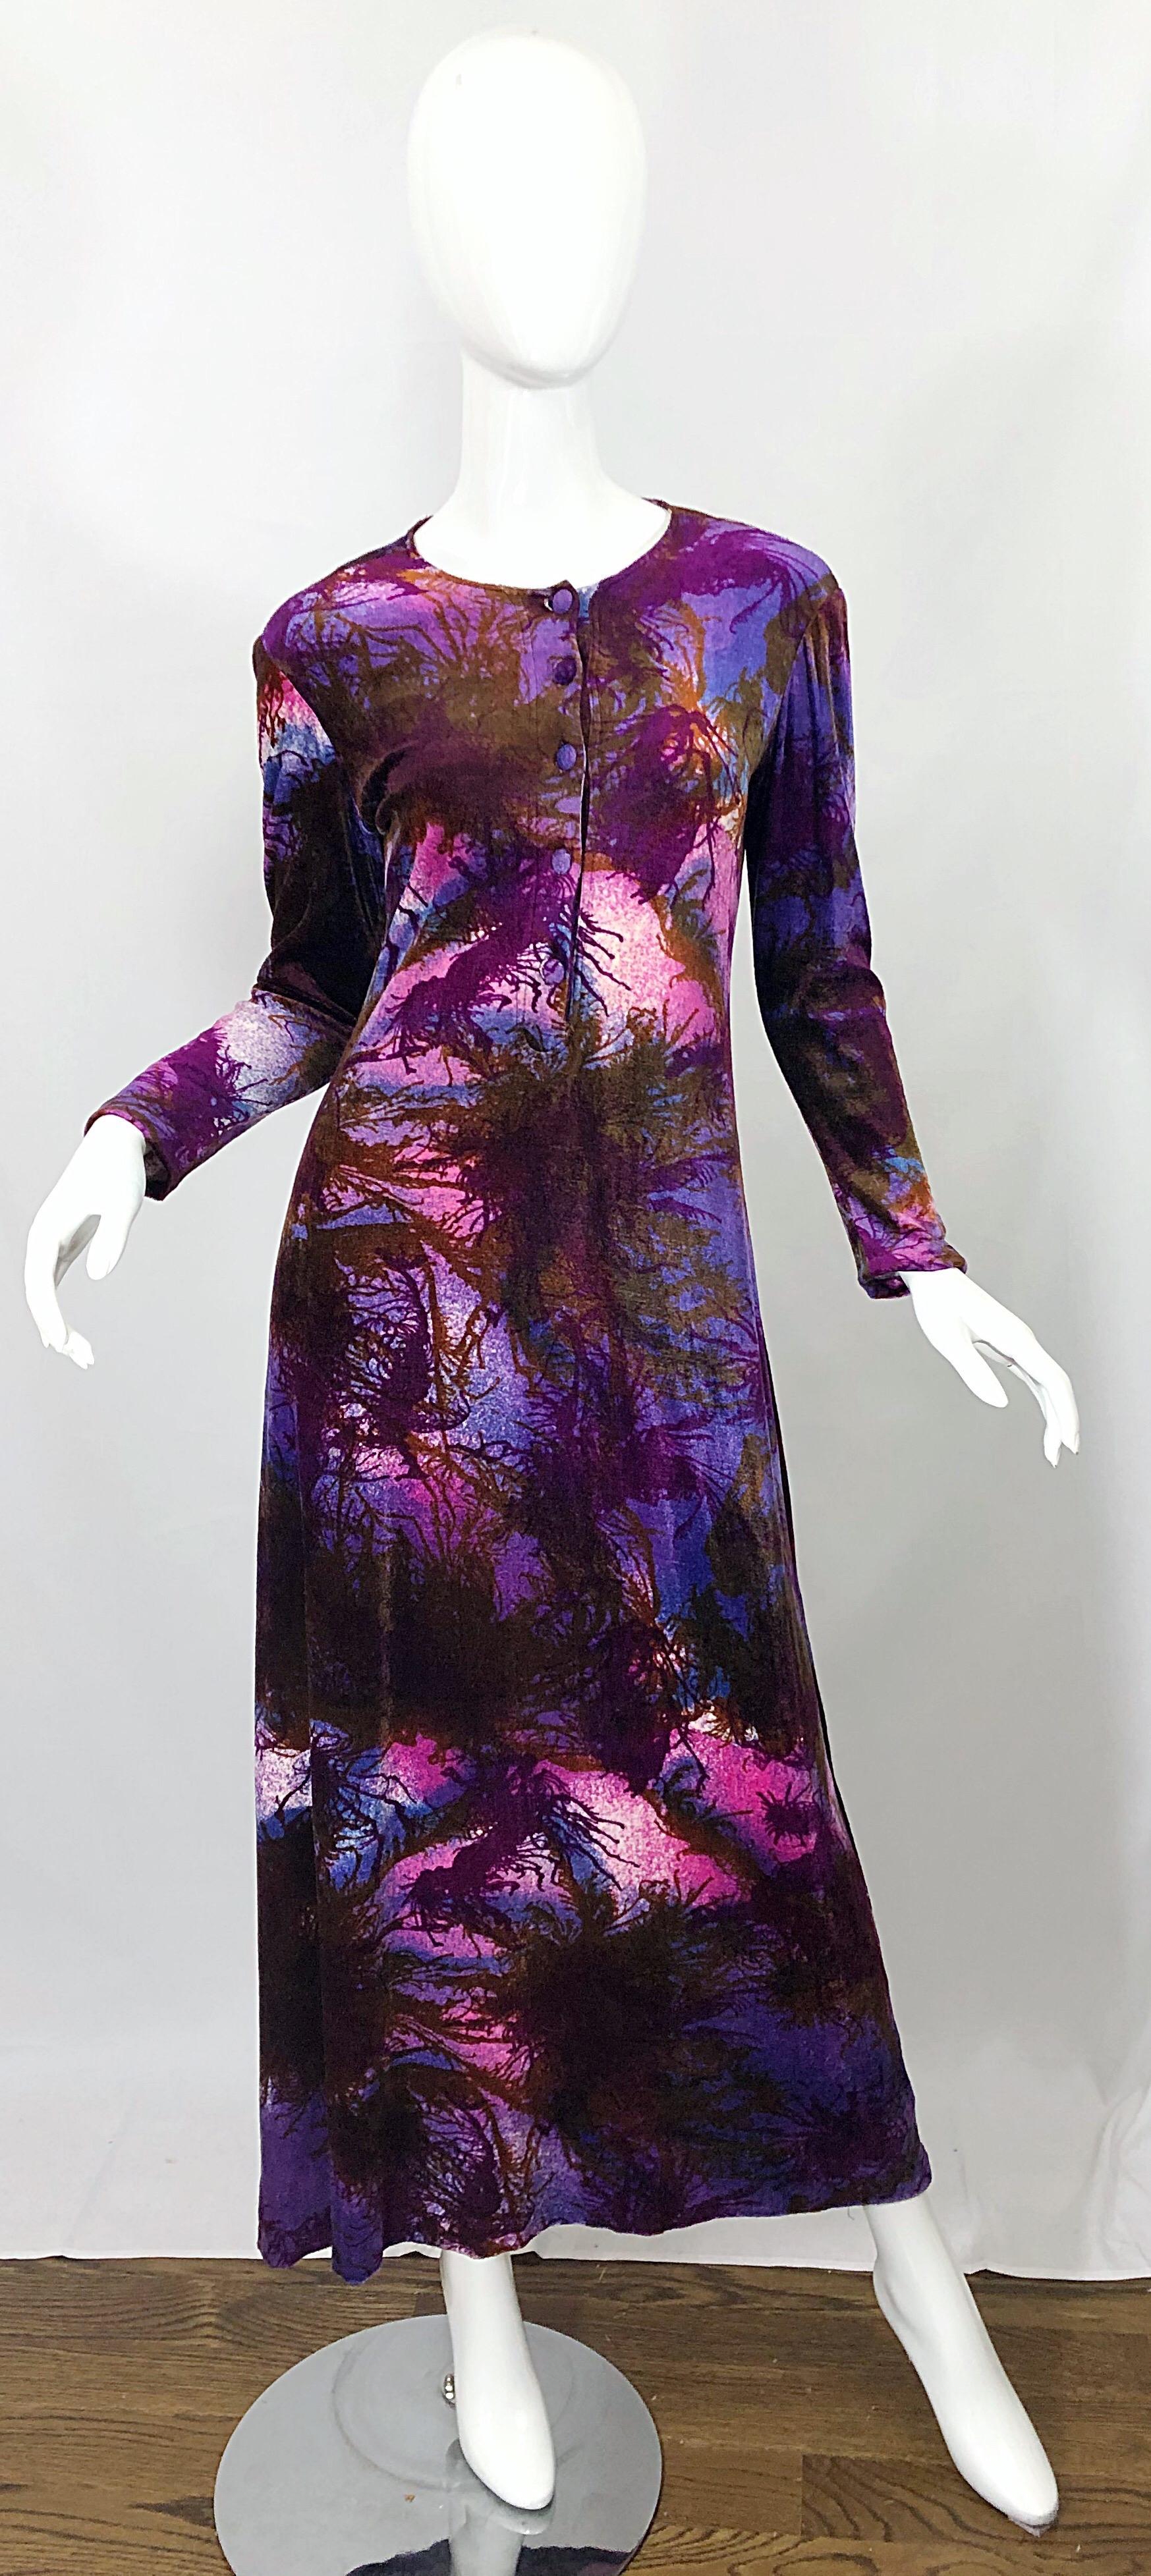 Rare et chic CACHAREL des années 1960 moderniste arbre imprimé robe maxi manches longues en velours / velour ! Des couleurs vibrantes comme le violet, le fuchsia, le rose, le marron et le noir. Boutons recouverts de tissu au centre du devant.